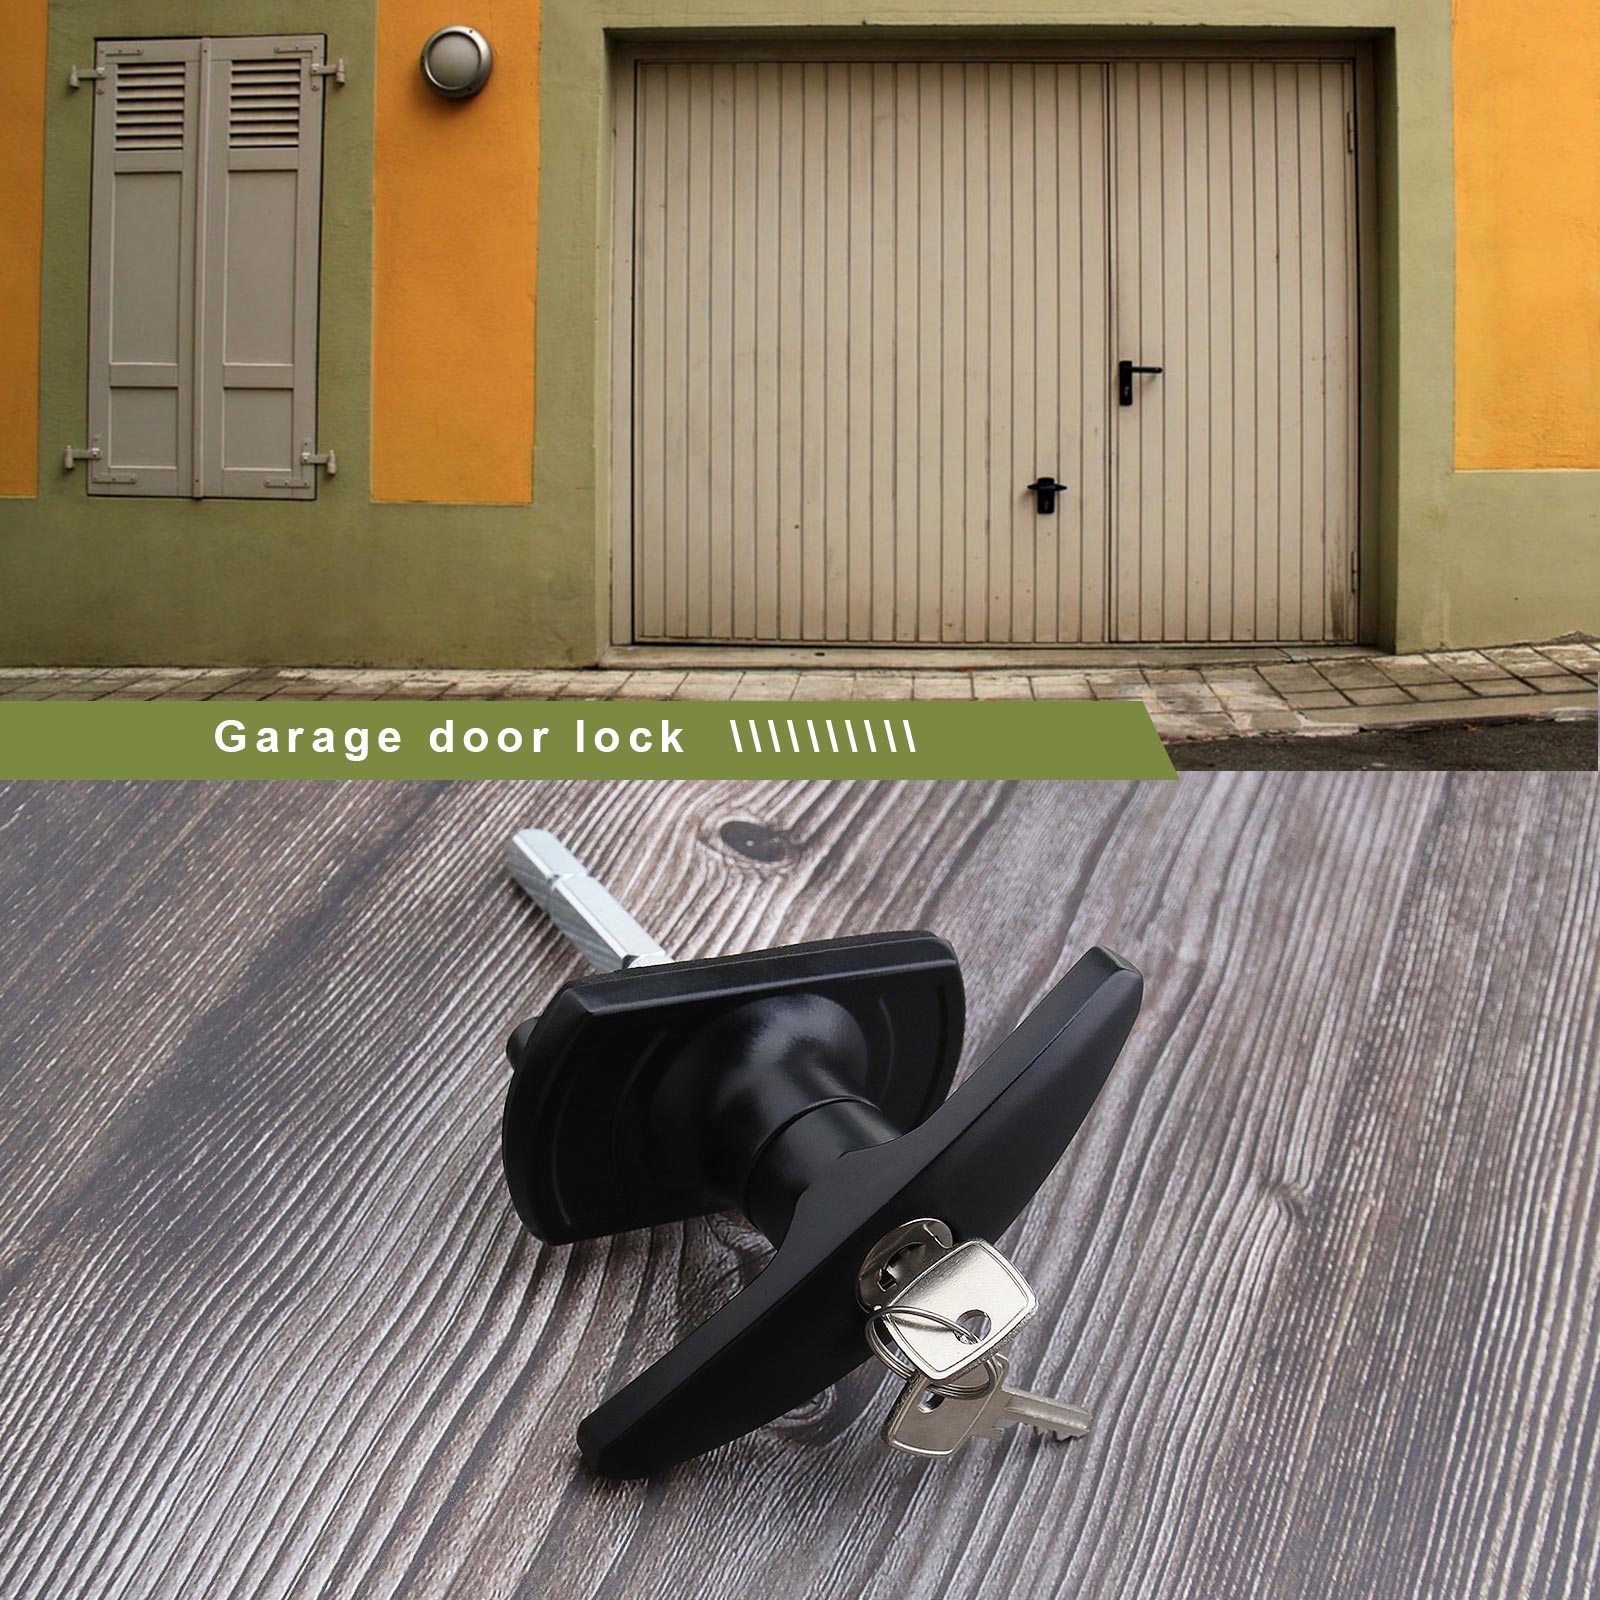  Garage Door Lock Repair Kit 